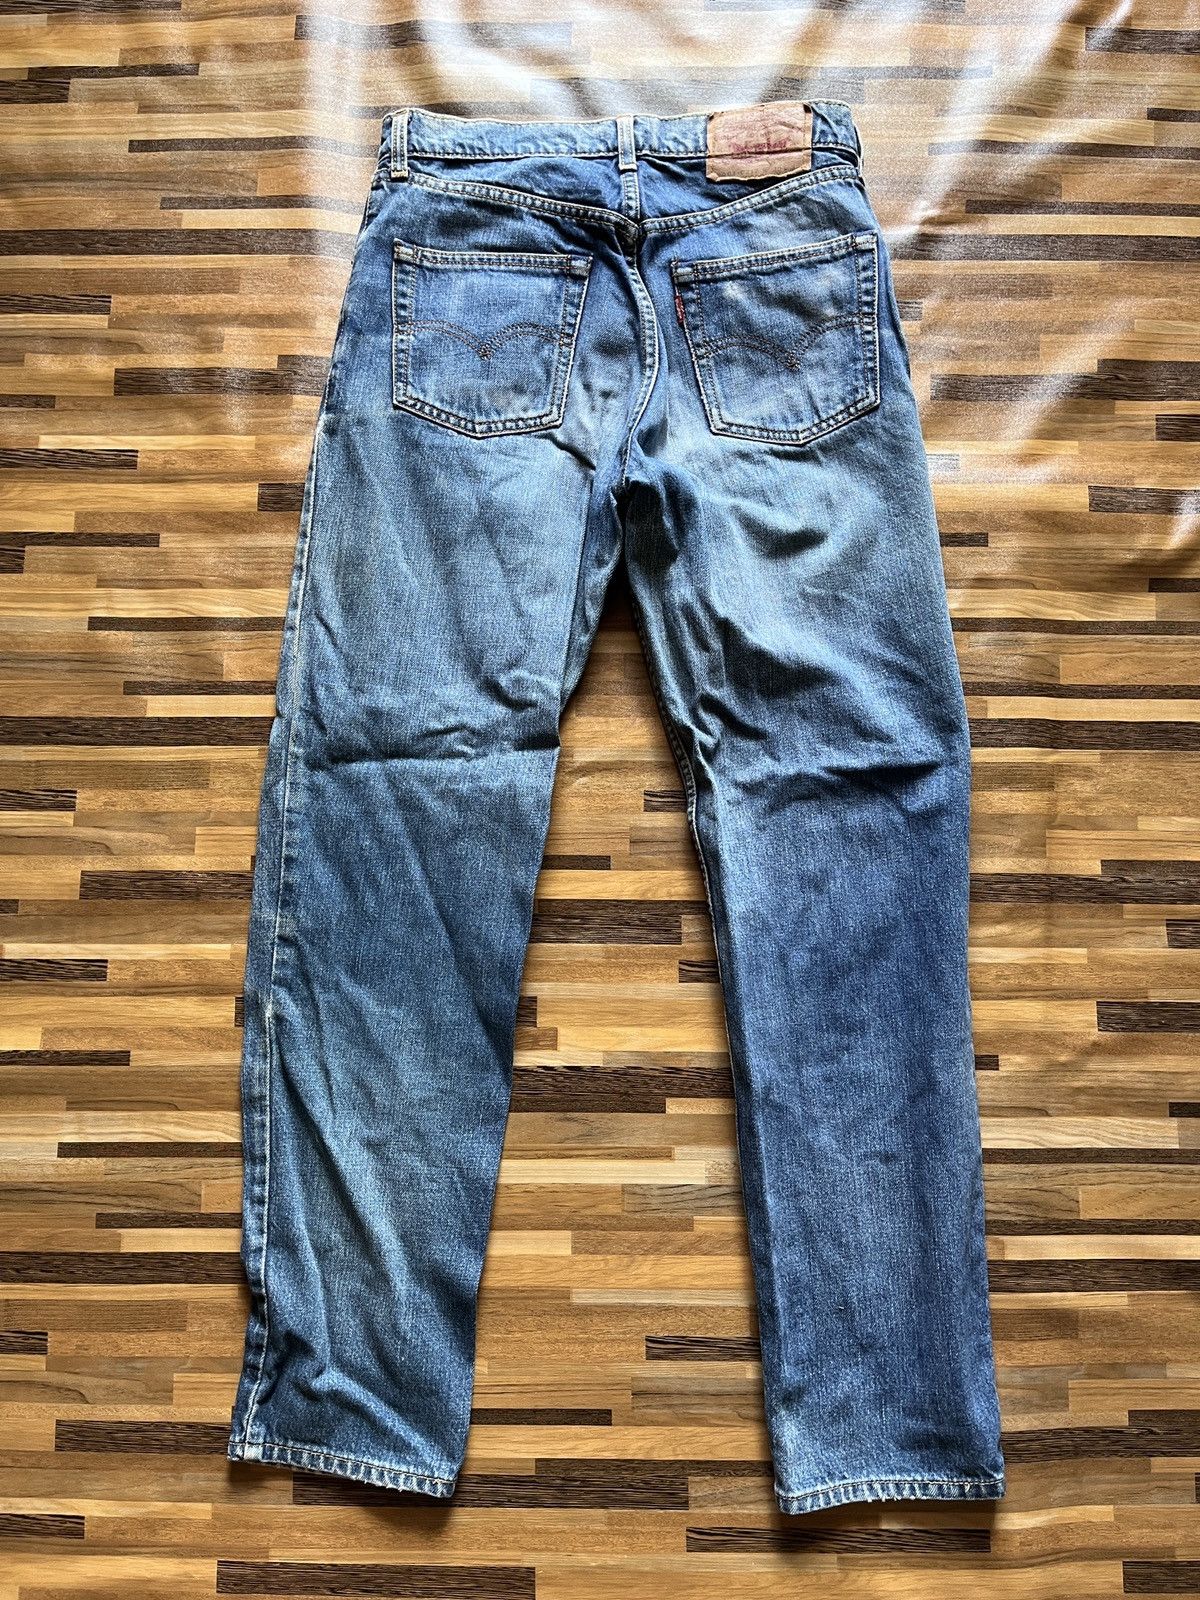 Vintage 1980s Levi's 603 Denim Jeans Straight Cut - 13